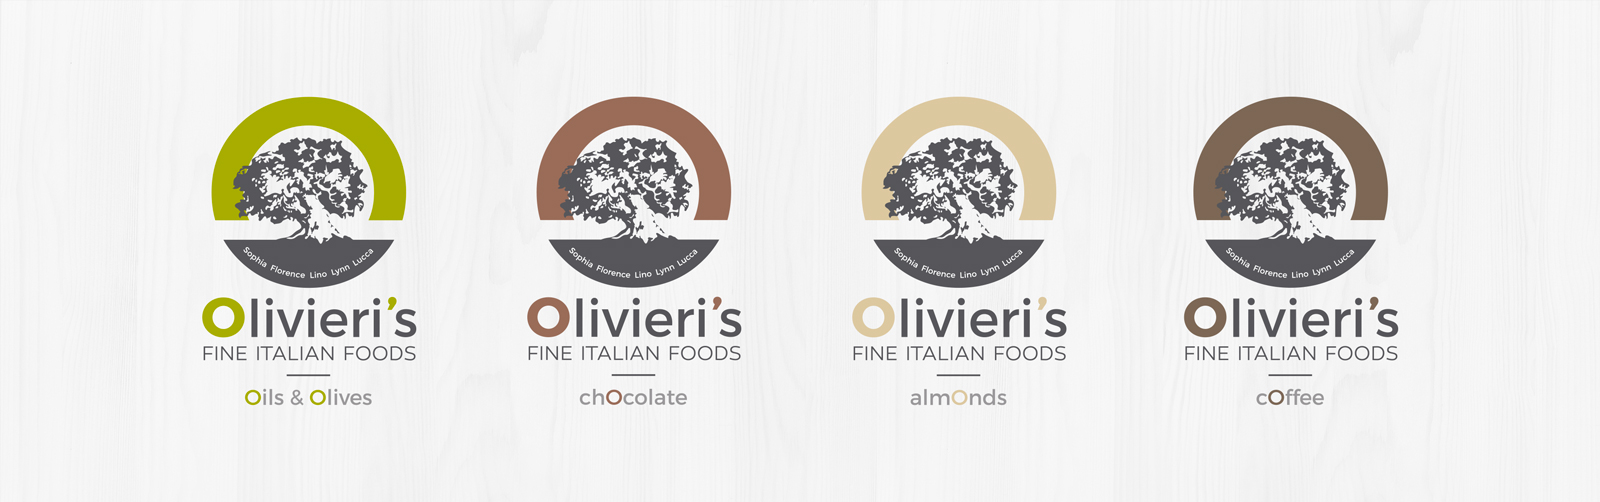 Olivieri’s fine italian food